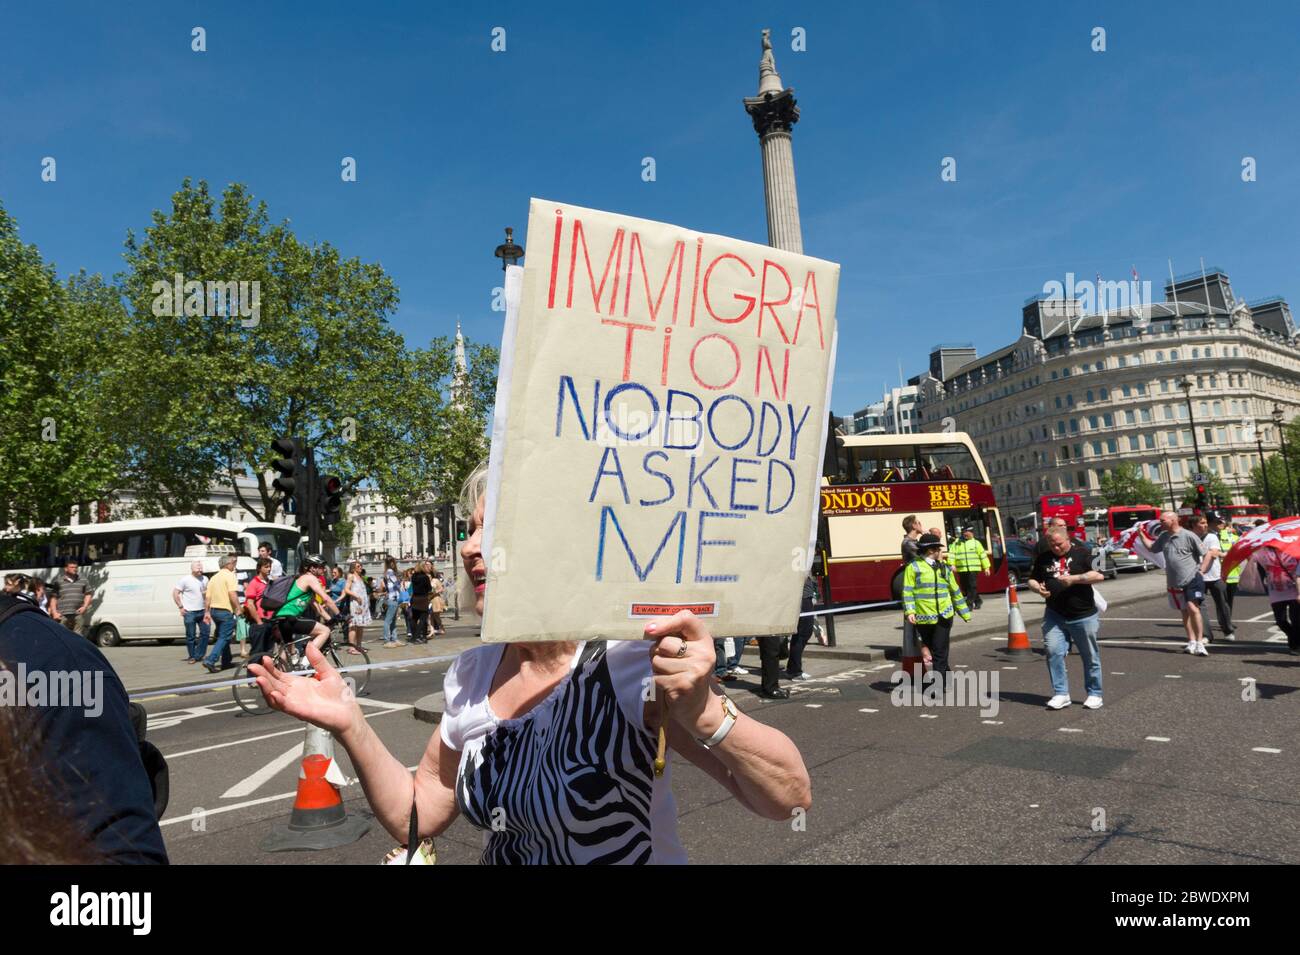 Ein Protestler gegen die Einwanderung auf einem marsch, der von einer Gruppe organisiert wurde, die sich "britische Bürger gegen muslimische Extremisten" nennt. Der Protest ist über die per Stockfoto